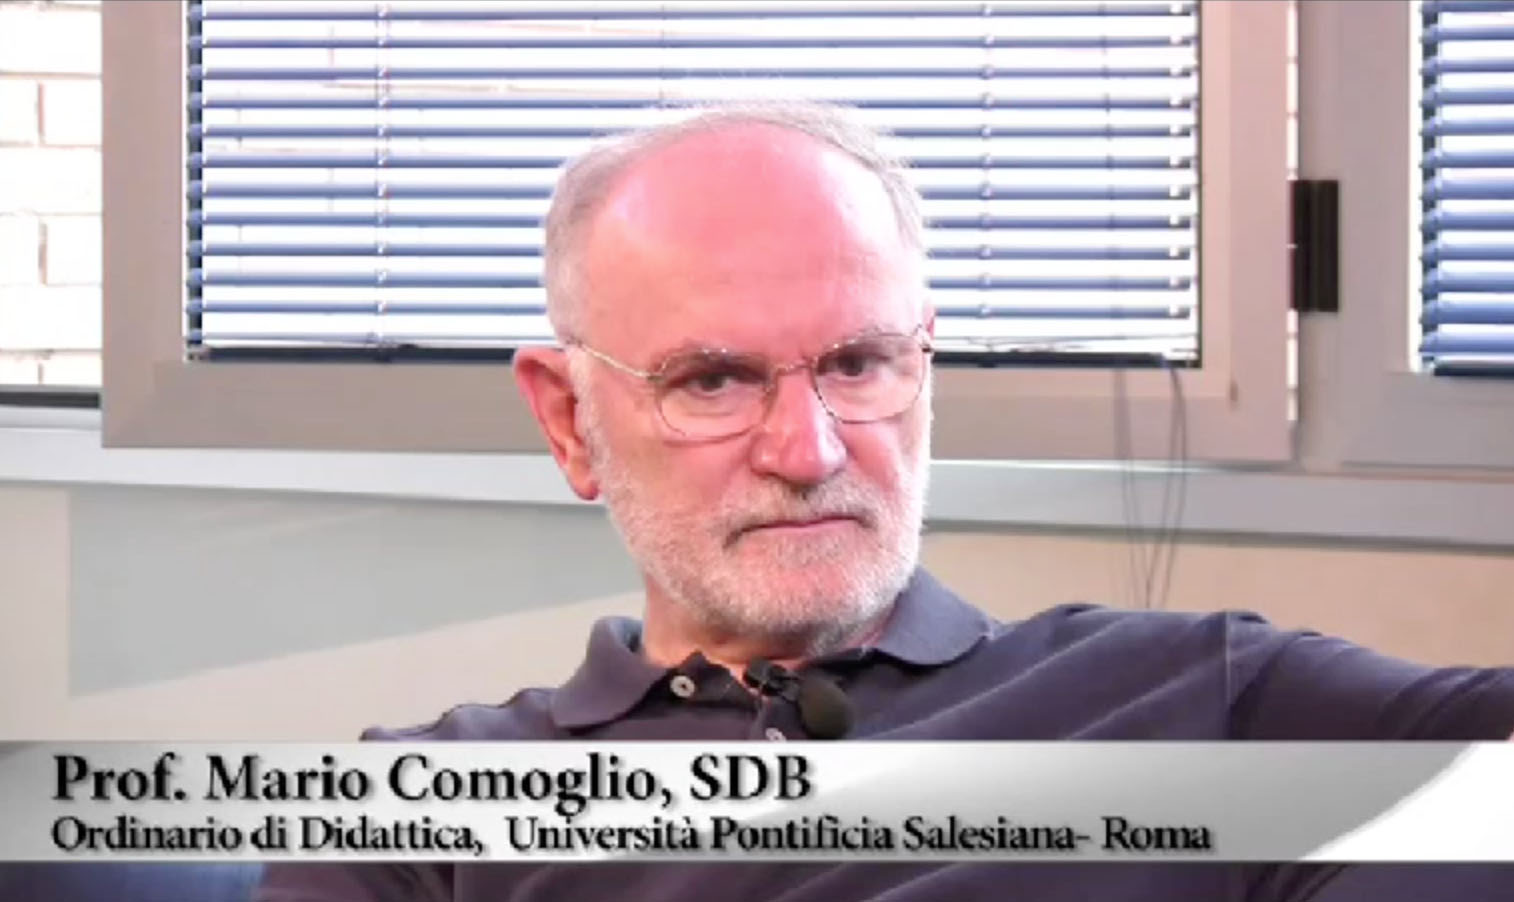 Mario Camoglio SDB - Ordinario di Didattica, Università Pontificia Salesiana di Roma